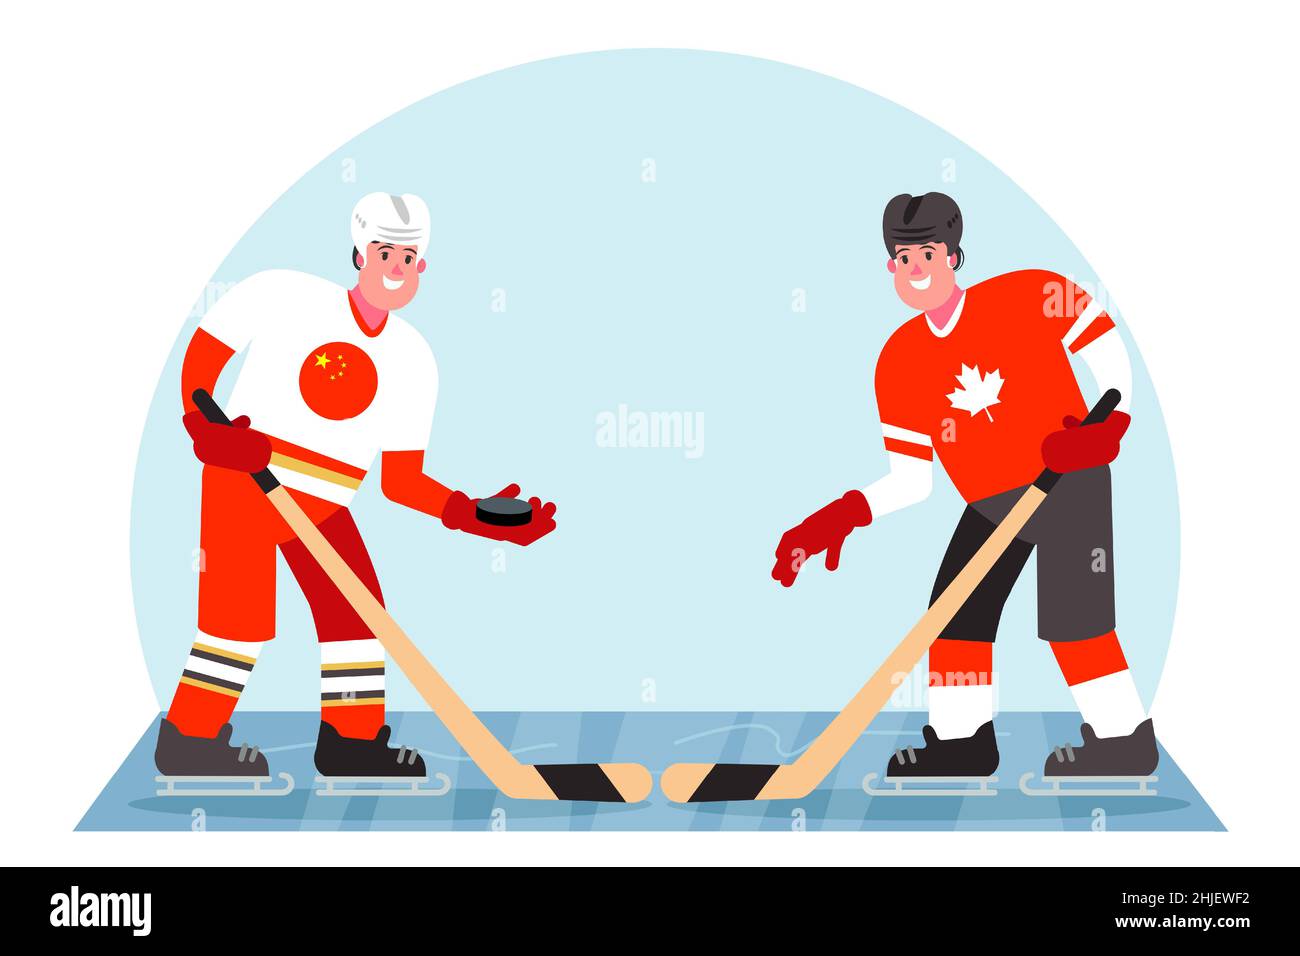 Eishockeyspieler. Wettbewerb zwischen China und Kanada. Vektorgrafik in einem flachen Stil. Stock Vektor